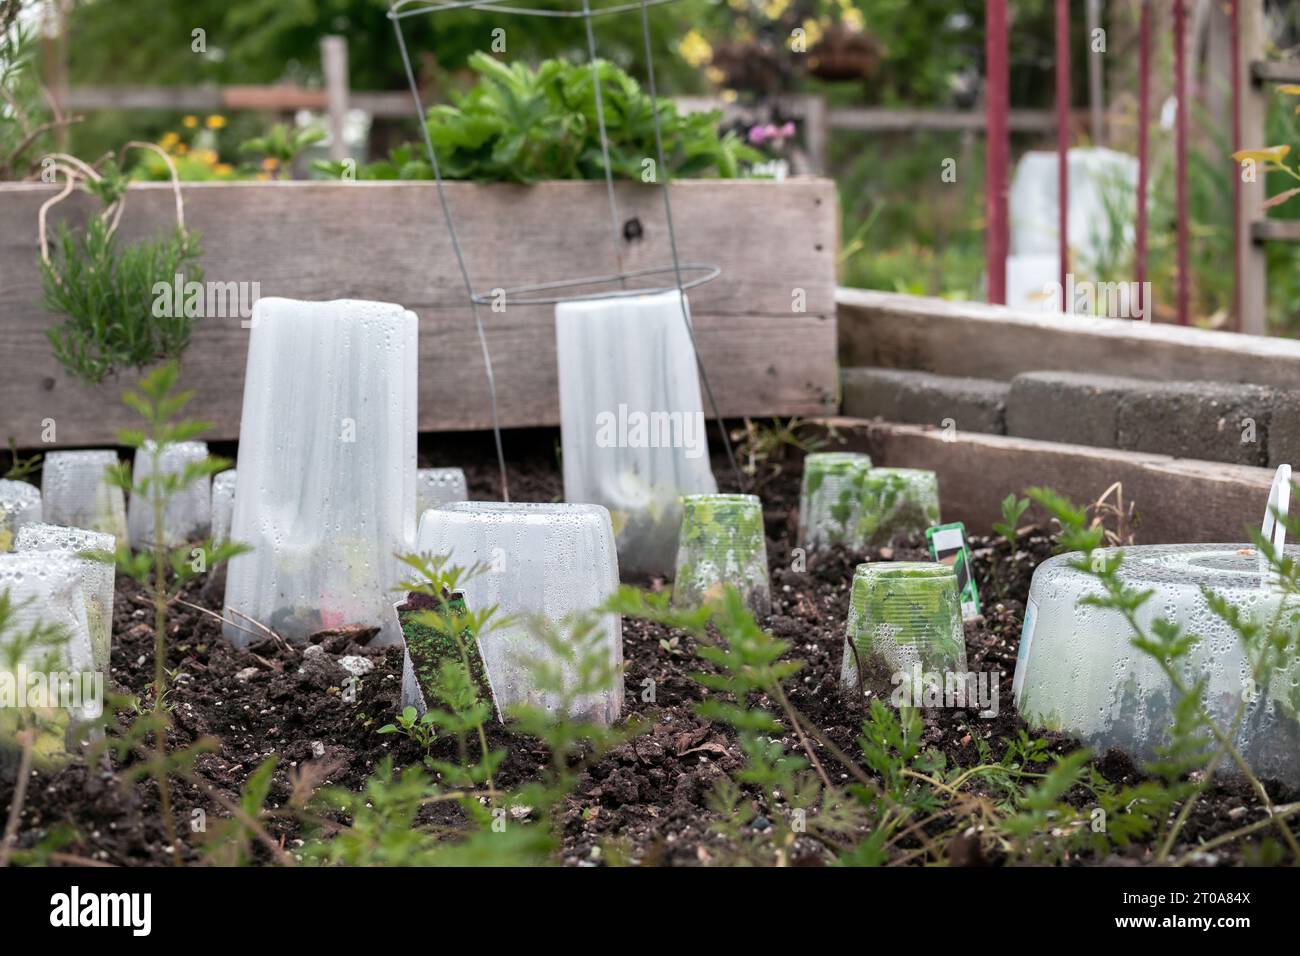 Gemüsepflanzen, die mit Cloche bedeckt sind, um vor Frost, kalten Temperaturen und Regen zu schützen. Viele unterschiedlich große Kunststoffbehälter über jungen Plänen platziert Stockfoto